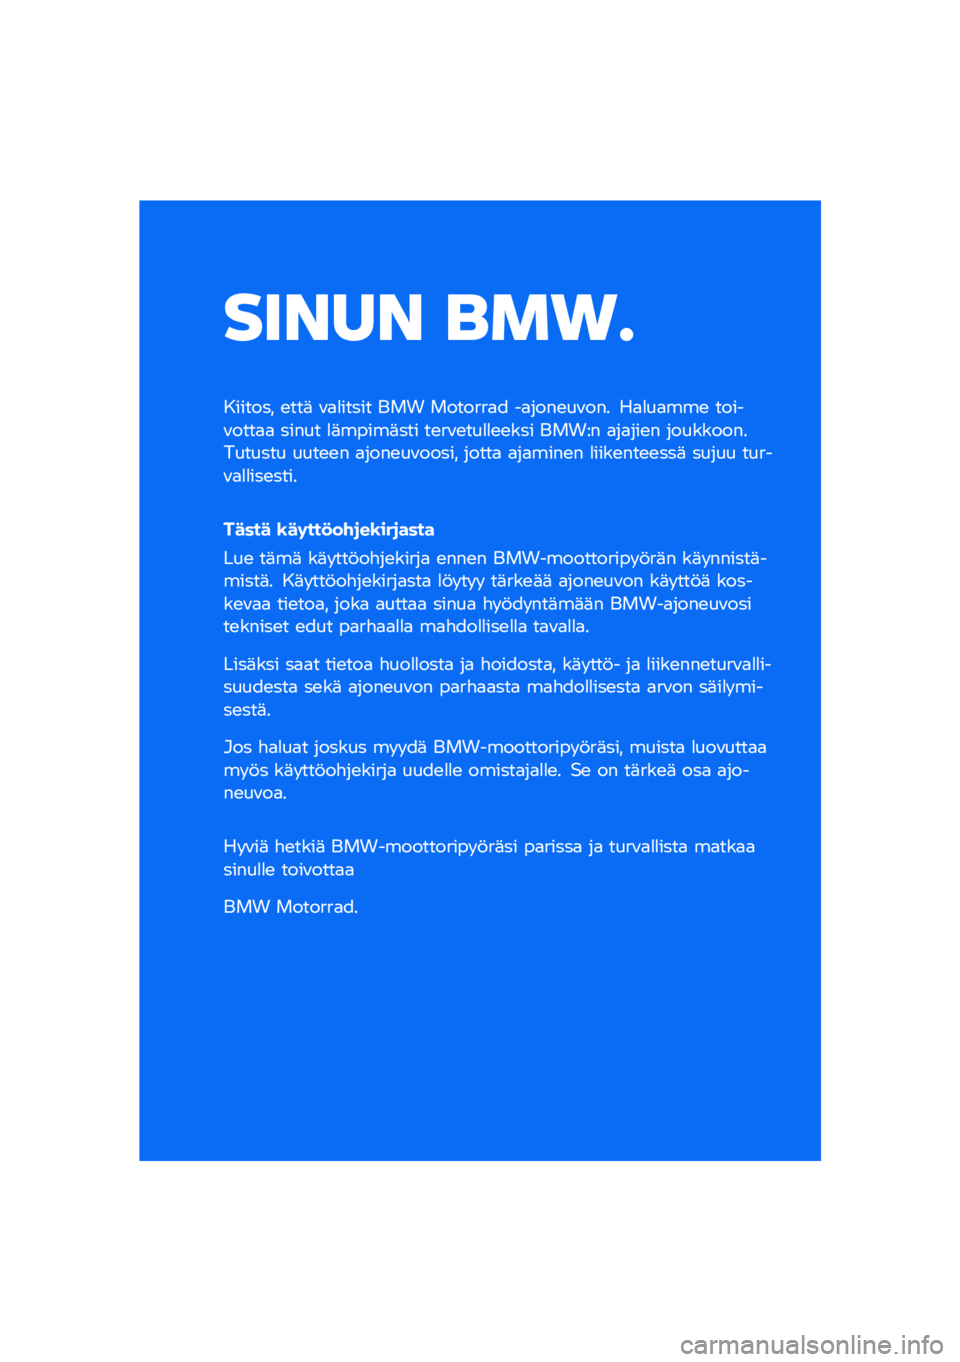 BMW MOTORRAD CE 04 2021  Käsikirja (in Finnish) ����� ���\b�	
������� �\b���	 �\f�
�
����� ��� �������
� ��
����\b��\f��� ��
�
��
���\b �����\f����
�
 ����� �
�	�����	��� ��\b��\f�\b�